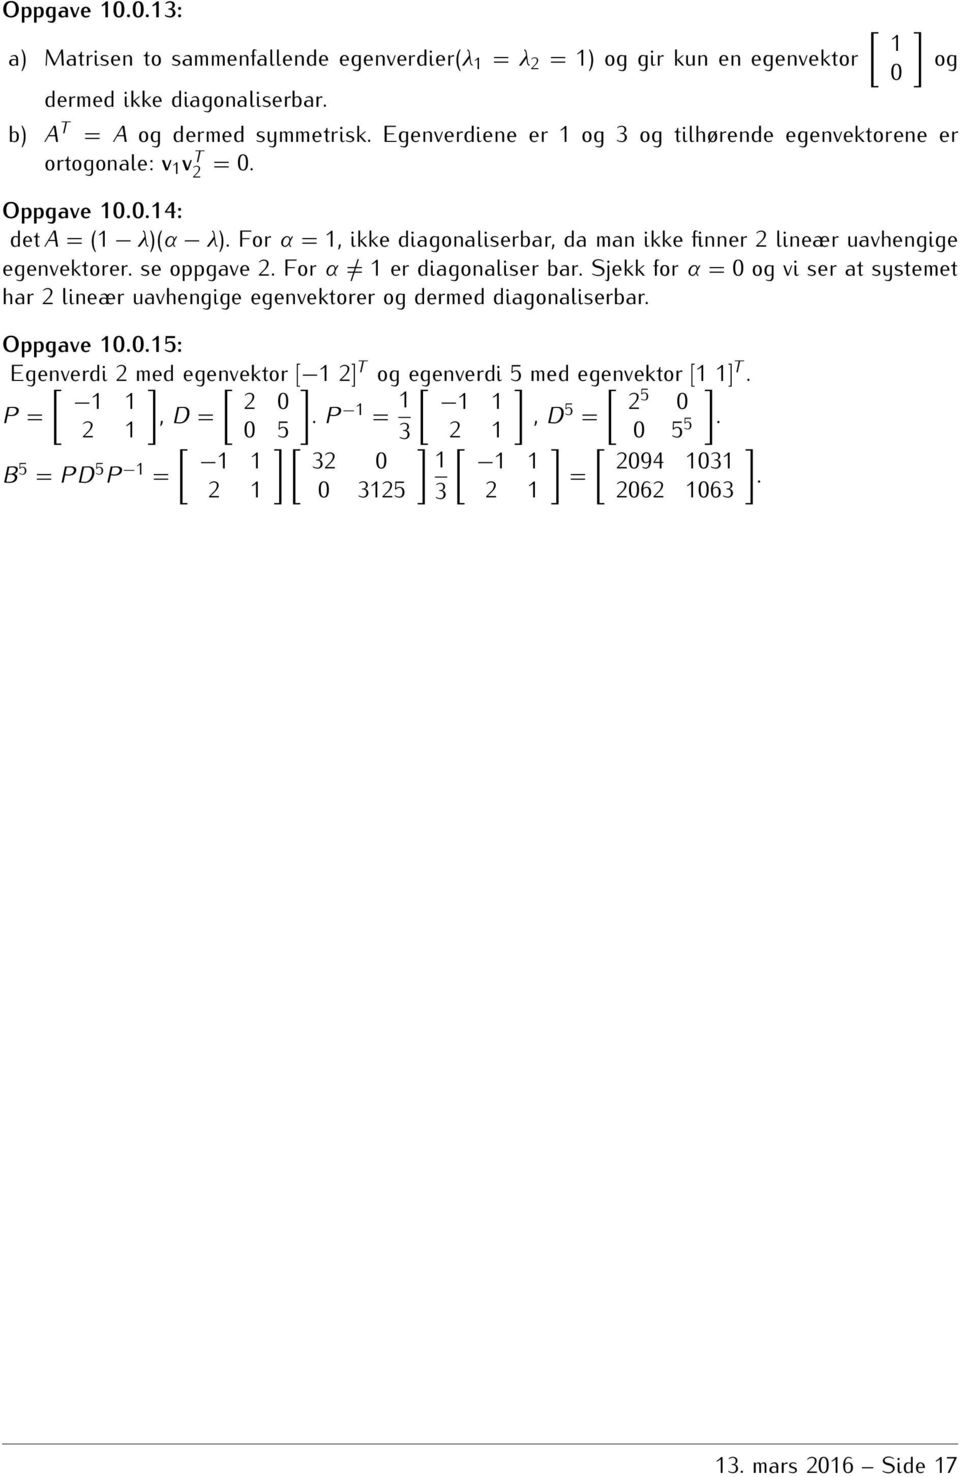 For α 1 er diagonaliser bar Sjekk for α = 0 og vi ser at systemet har 2 lineær uavhengige egenvektorer og dermed diagonaliserbar Oppgave 10015: Egenverdi [ 2 med egenvektor [ [ 1 2 T og